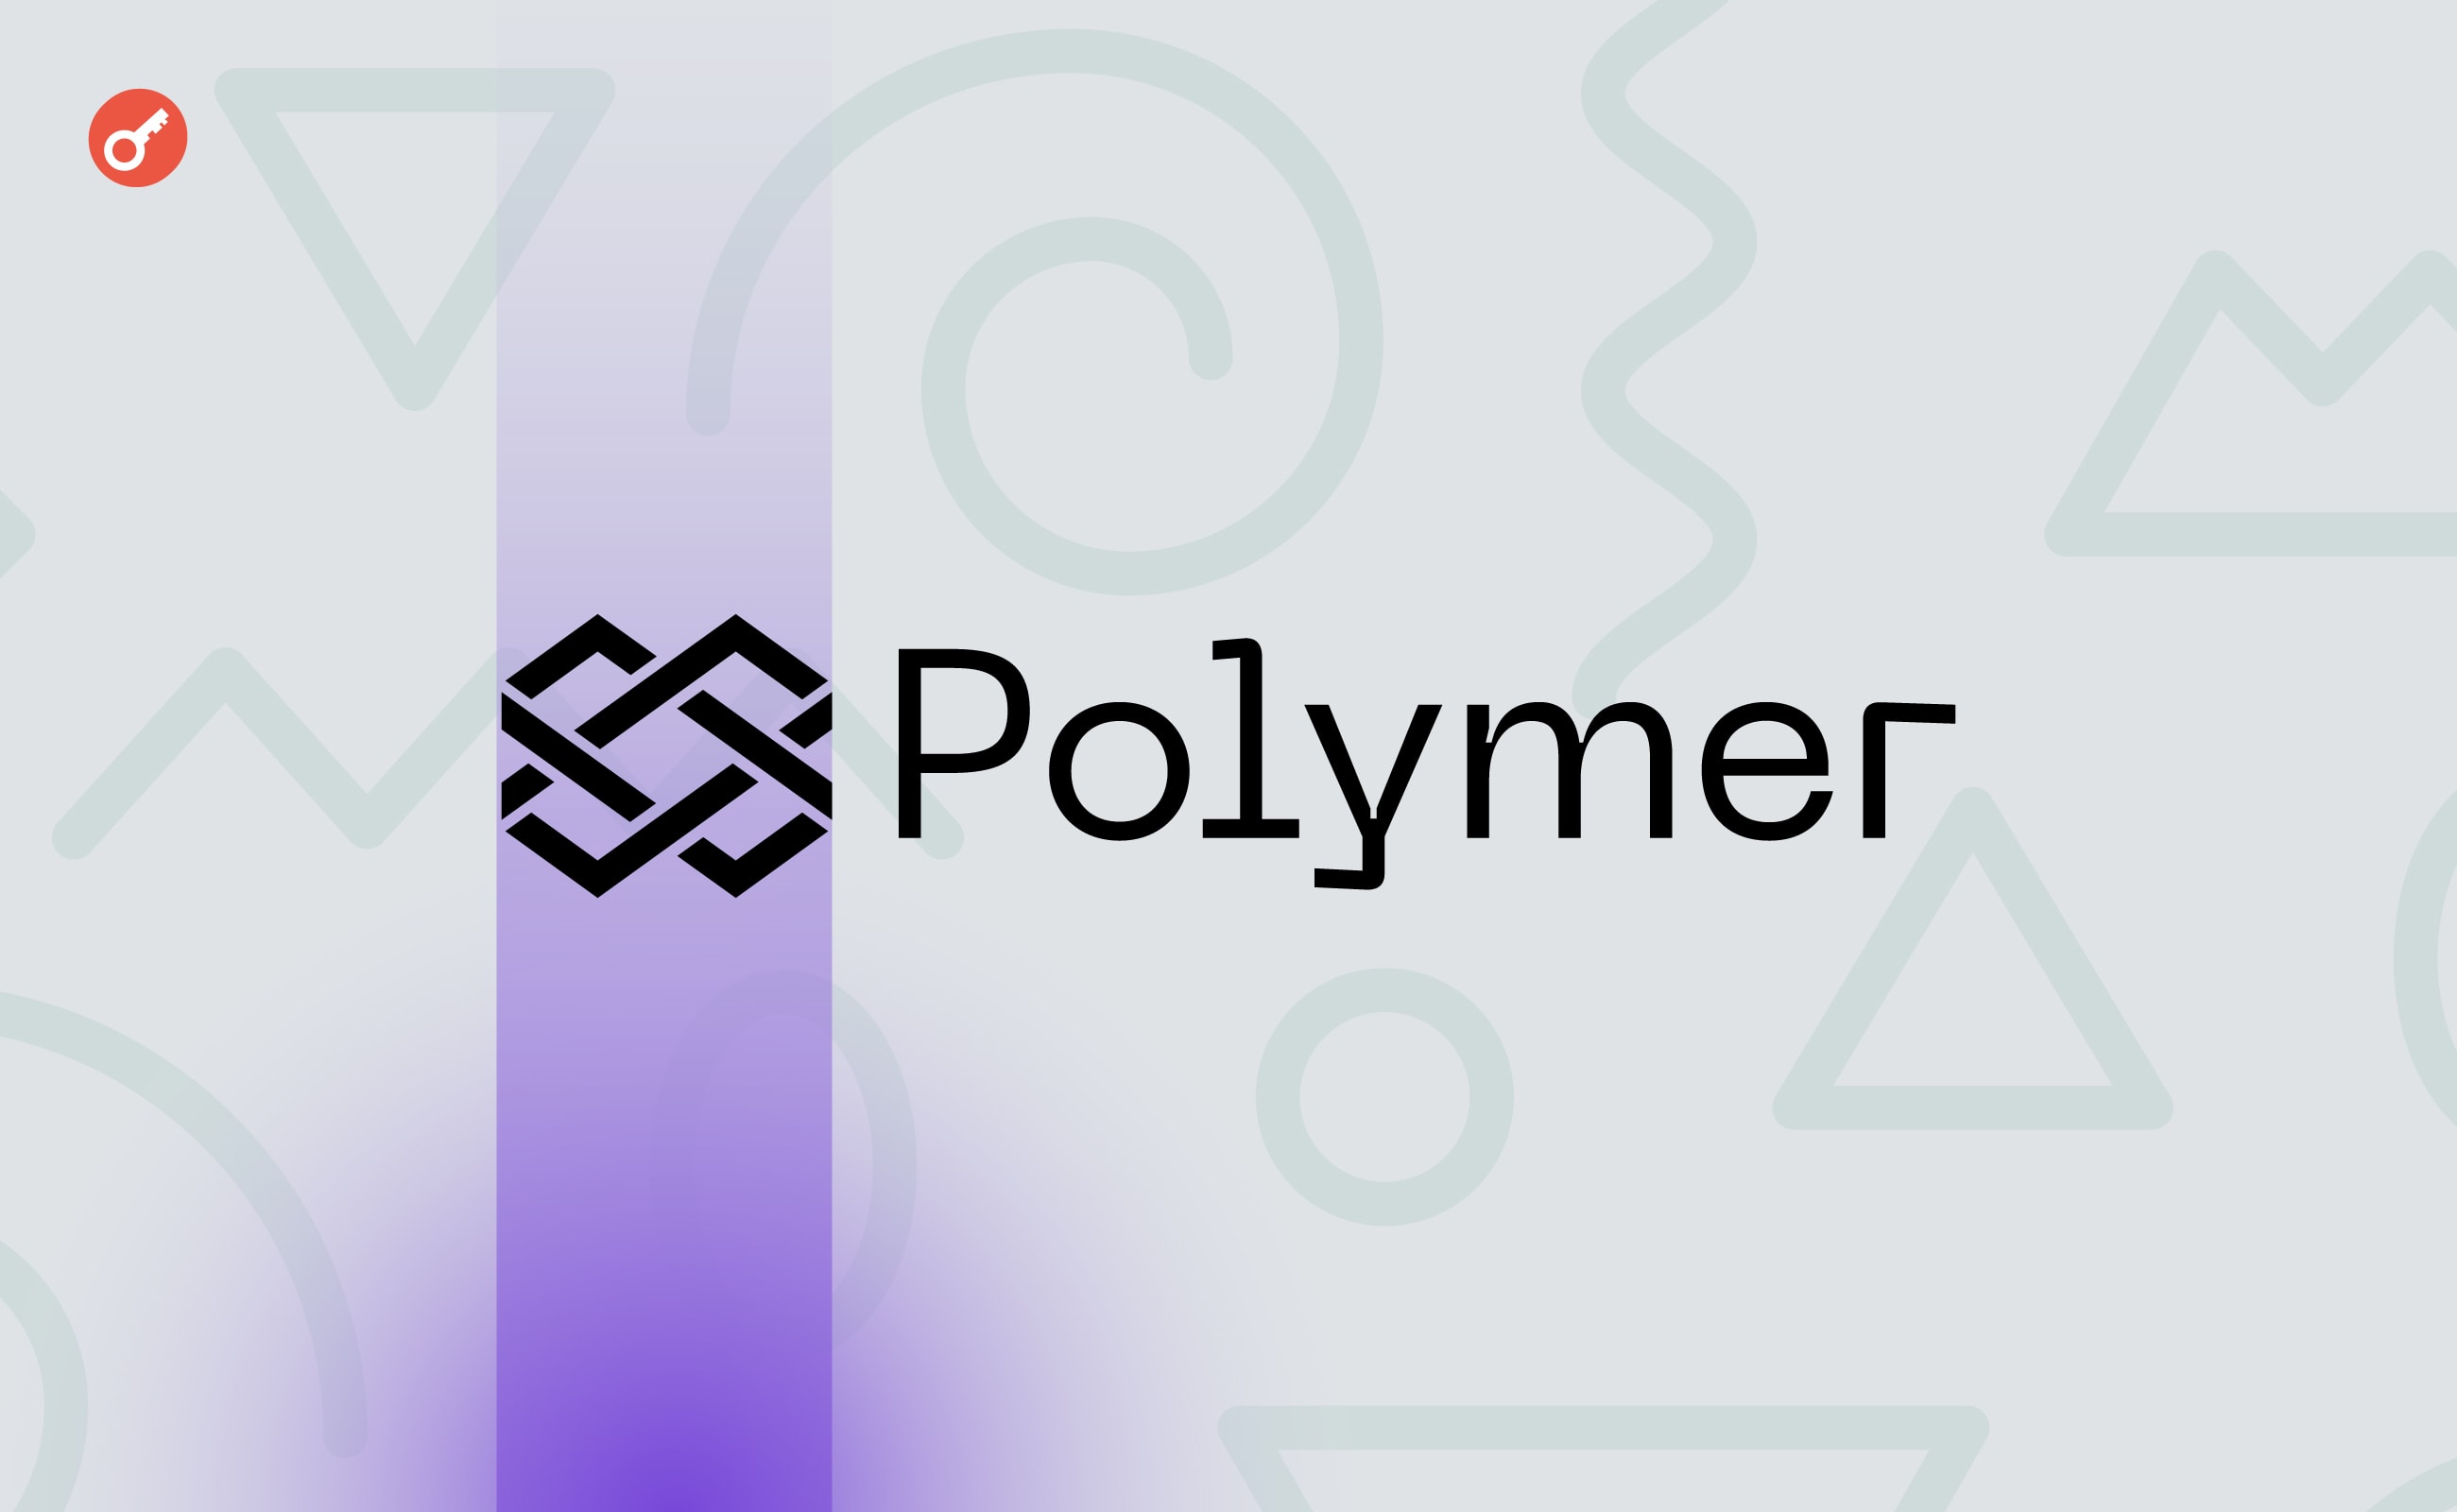 Polymer Labs залучила $23 млн інвестицій . Головний колаж новини.